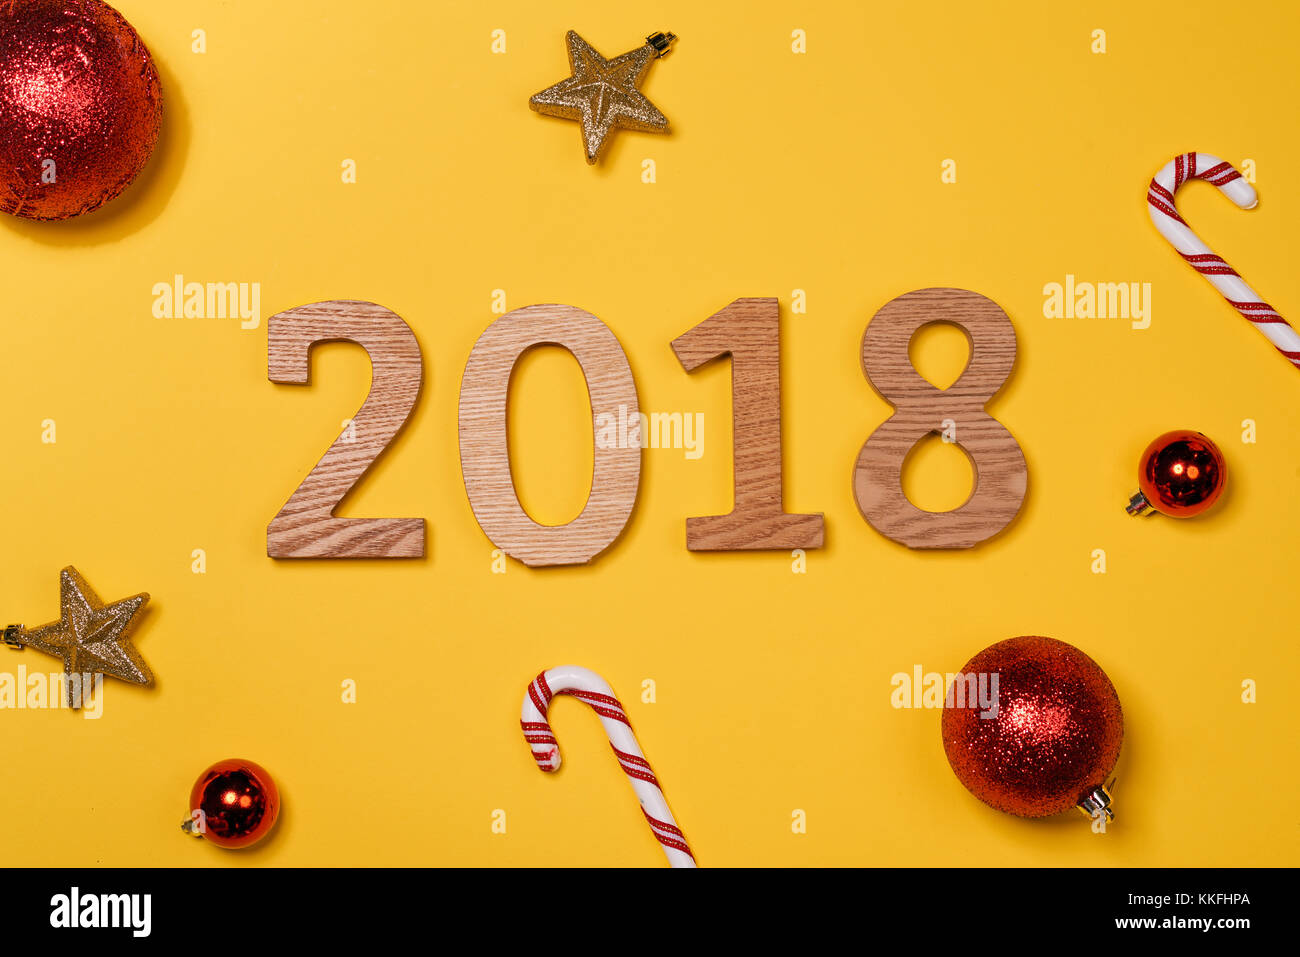 Vue d'une bonne année 2018 avec l'arrière-plan décoration de Noël Banque D'Images